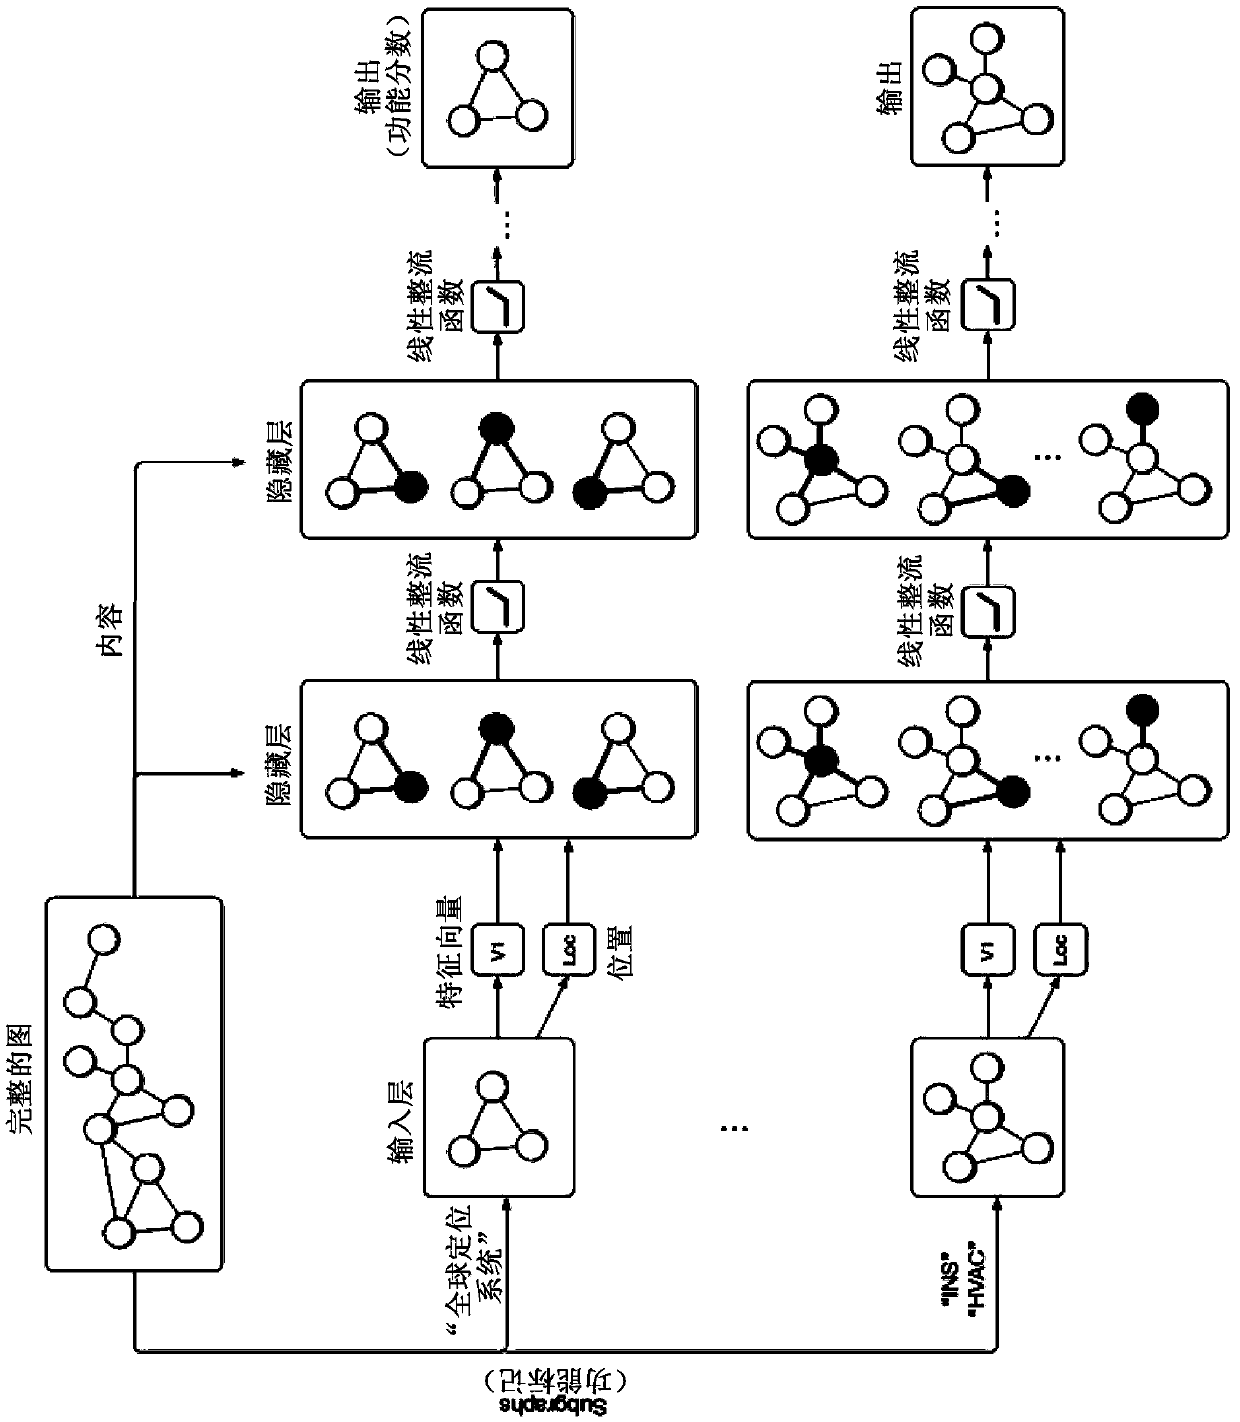 Sgcnn: structural graph convolutional neural network